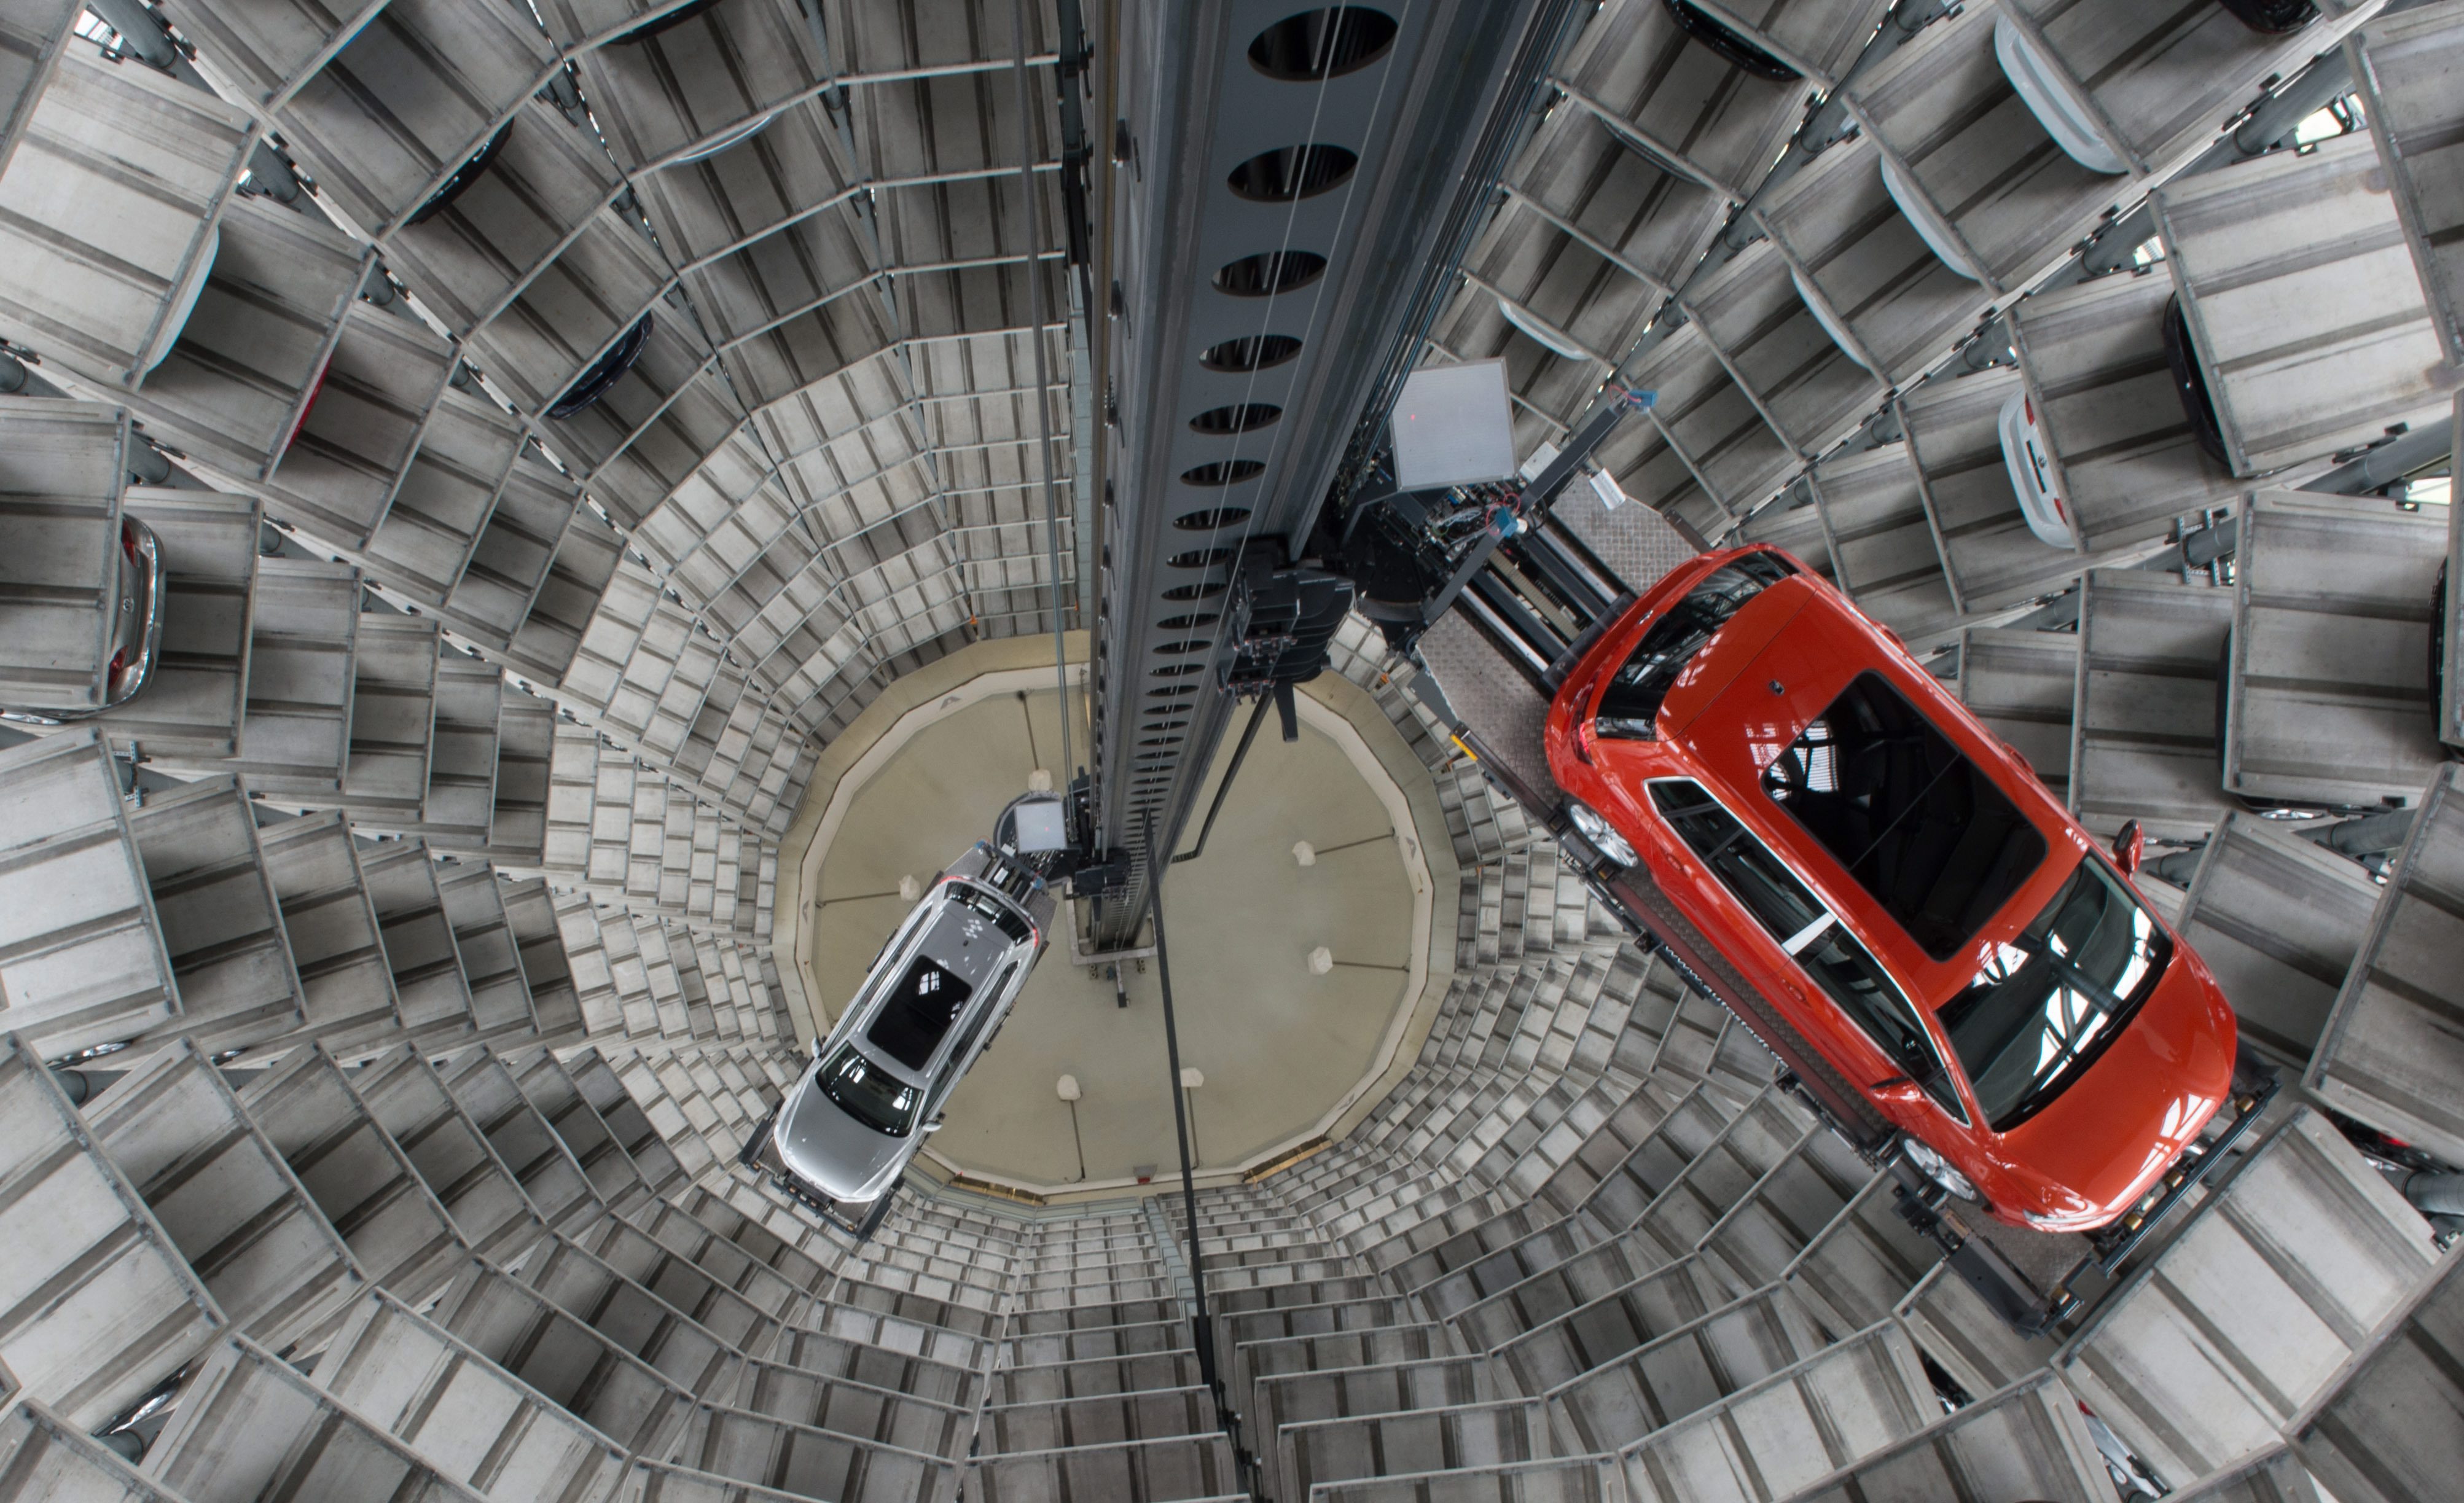 Στροφή στα ηλεκτροκίνητα και επαναπροσδιορισμό των επενδύσεων κατά 1 δις ευρώ ανακοίνωσε ο όμιλος VW